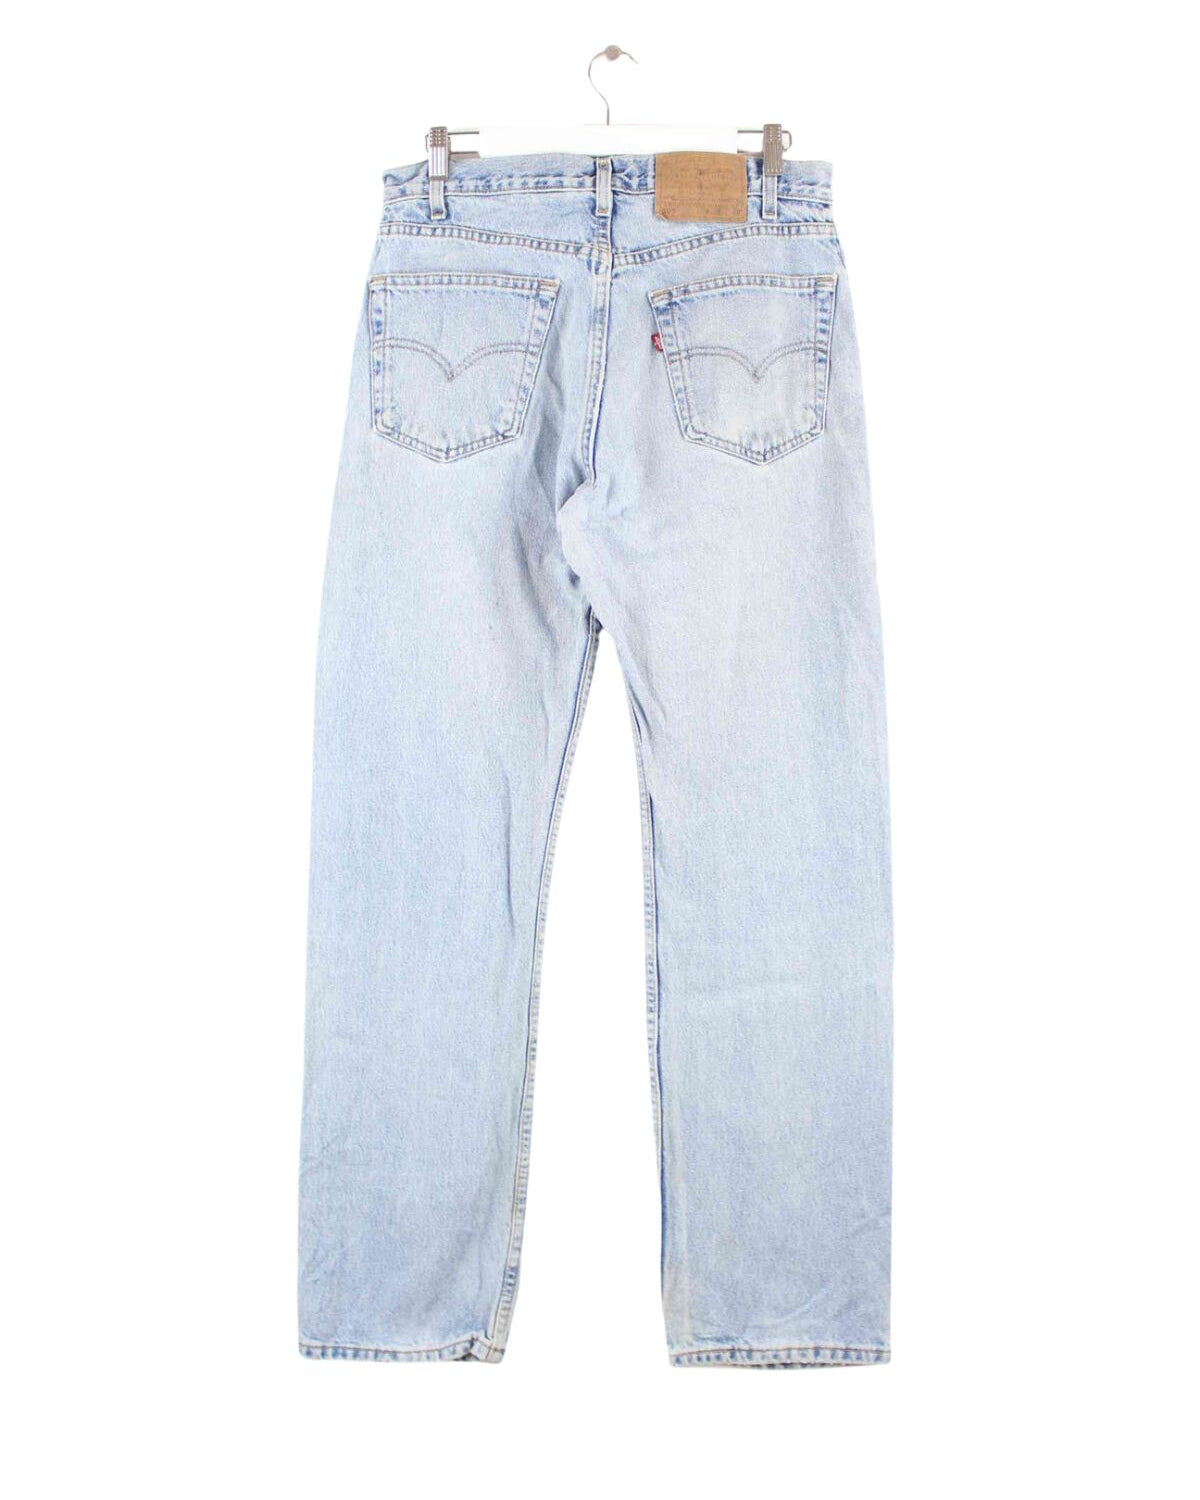 Levi's 90s Vintage 505 Jeans Blau W32 L32 (back image)